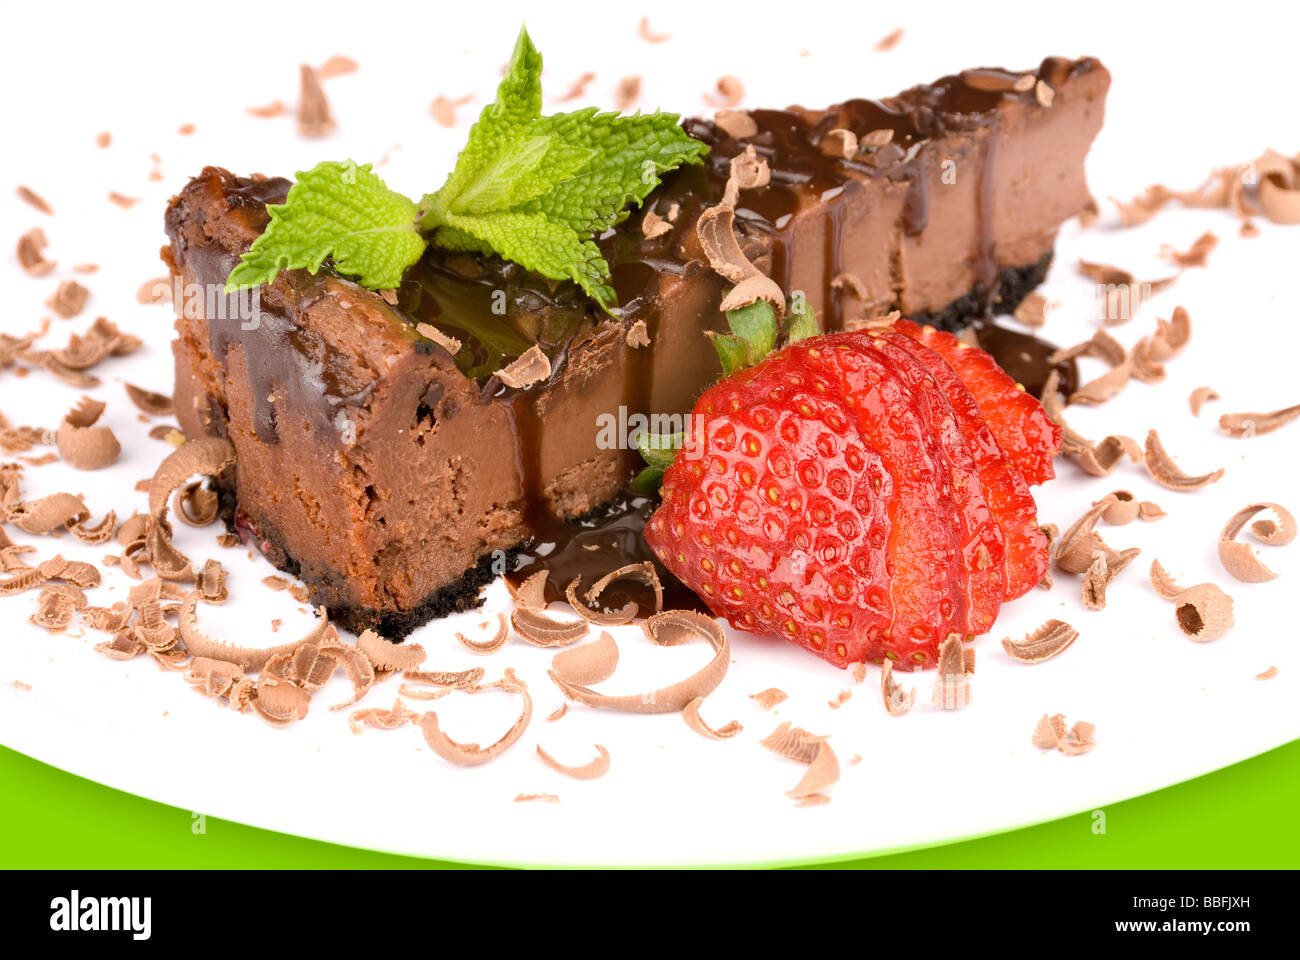 Un gros plan d'une tranche de gâteau au chocolat avec des fraises fraîches et garnir d'une feuille de menthe Banque D'Images